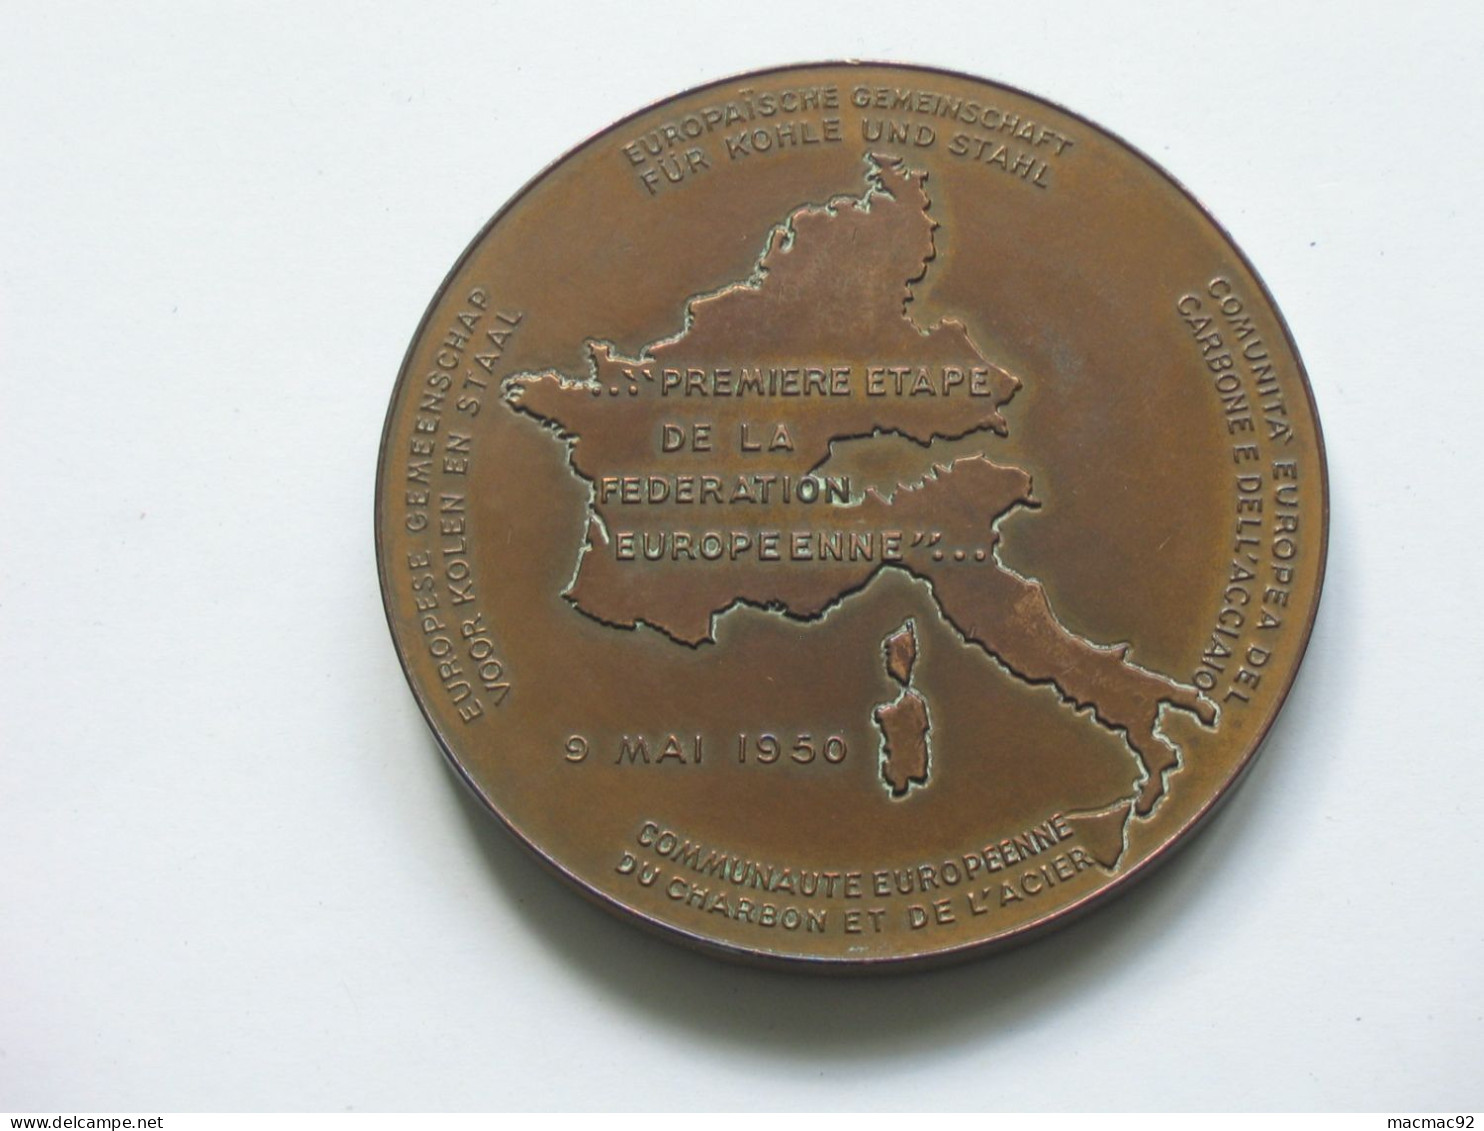 Médaille ROBERT SCHUMAN - 1ere étape De La Fédération Européenne 9 Mai 1960  **** EN ACHAT IMMEDIAT **** - Professionnels / De Société